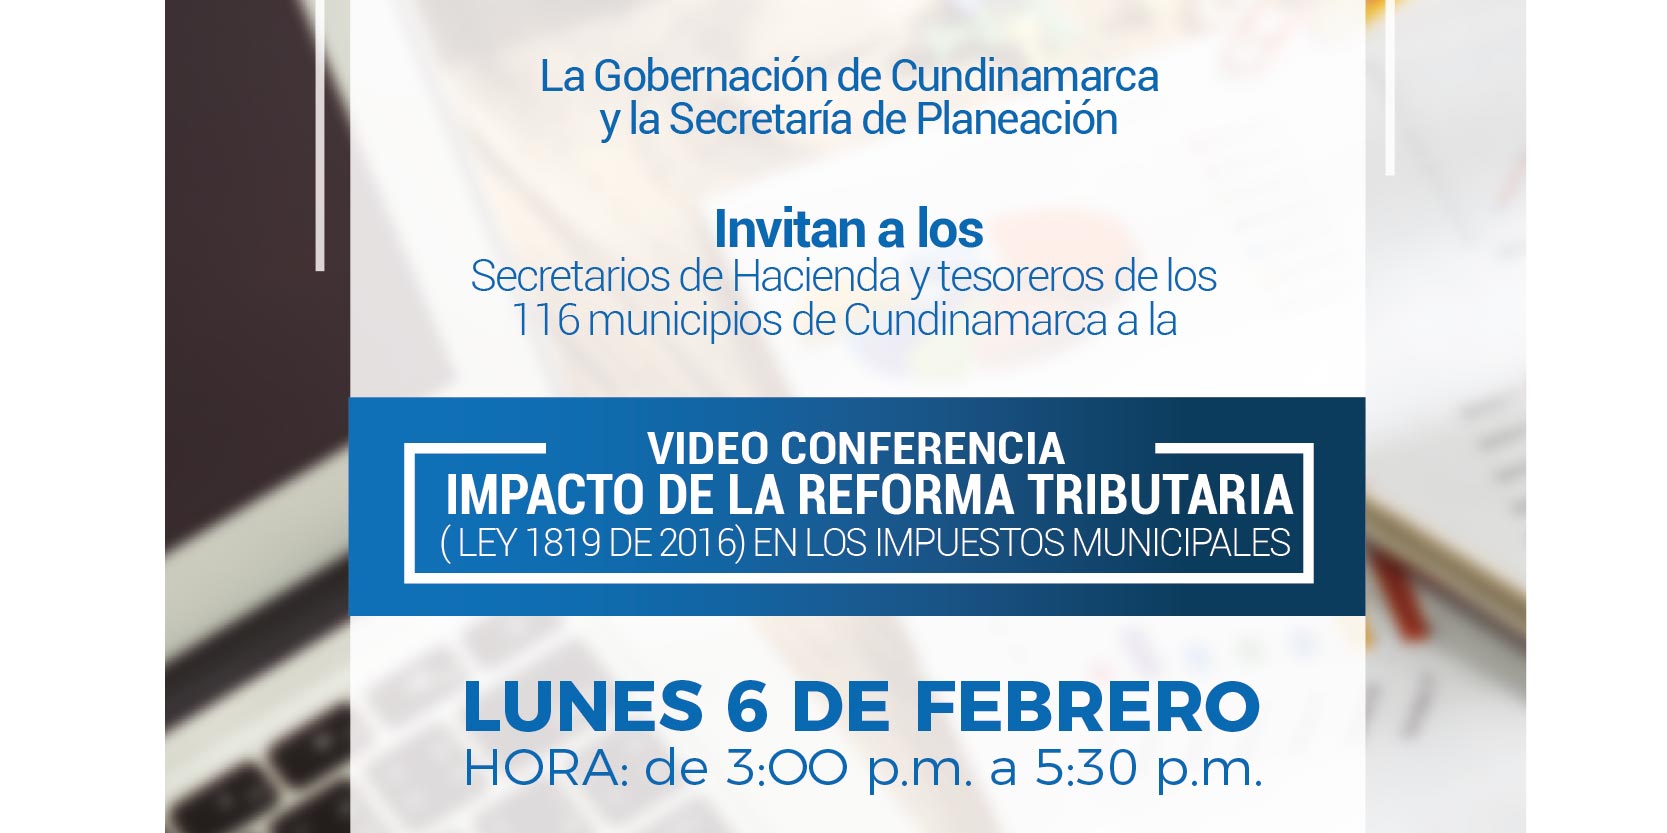 Videoconferencia “Impacto de la Reforma Tributaria en los impuestos”





